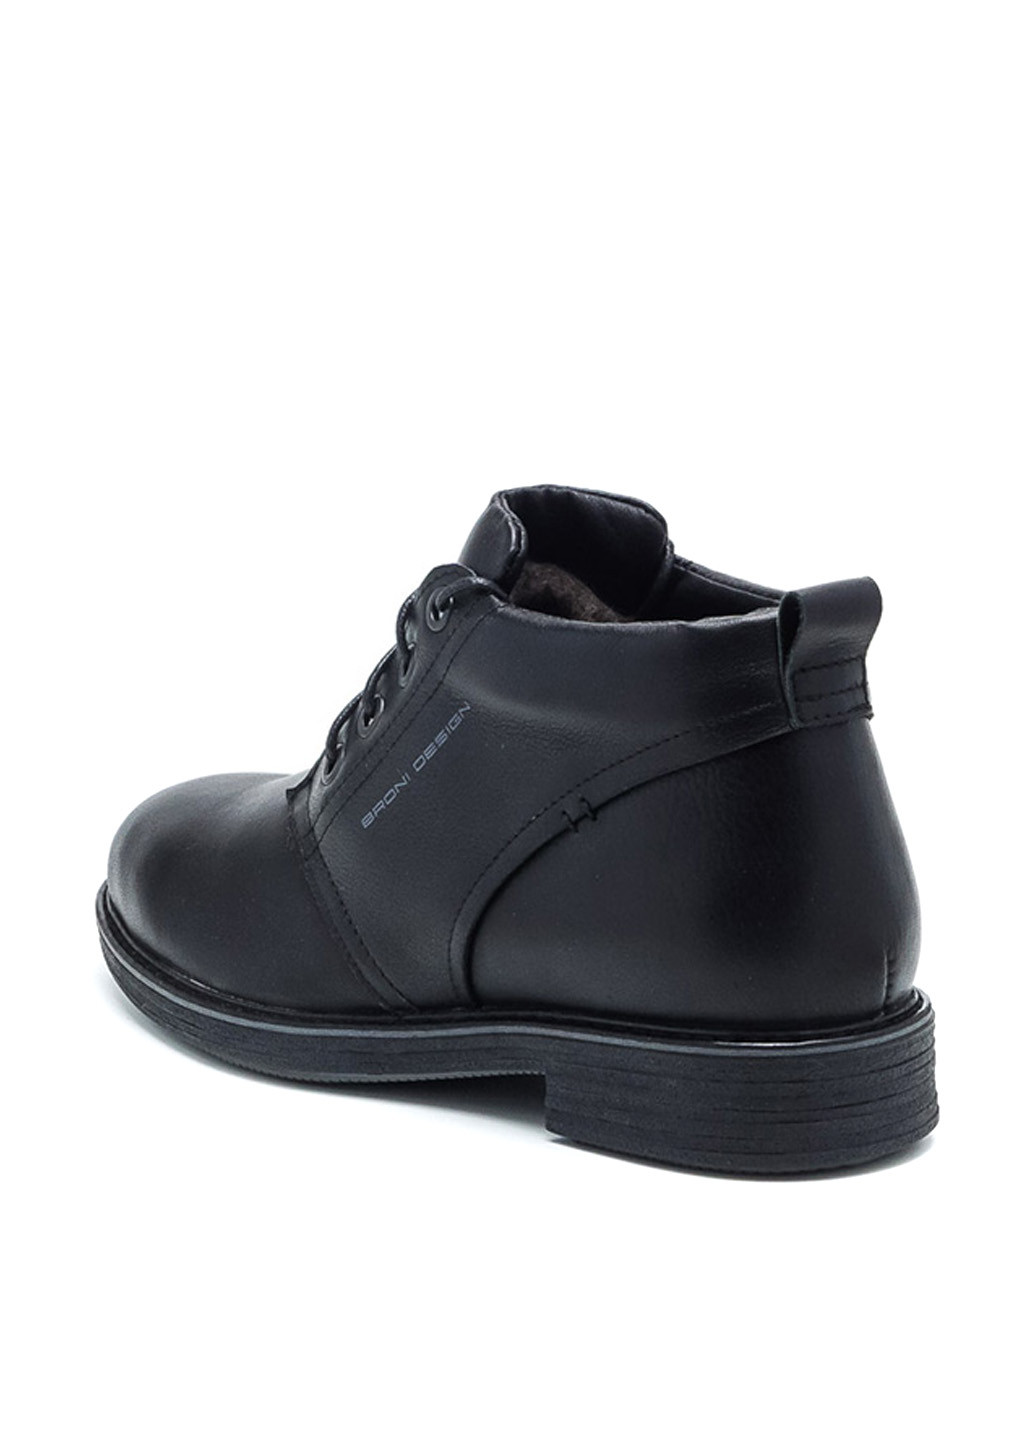 Черные зимние ботинки Broni